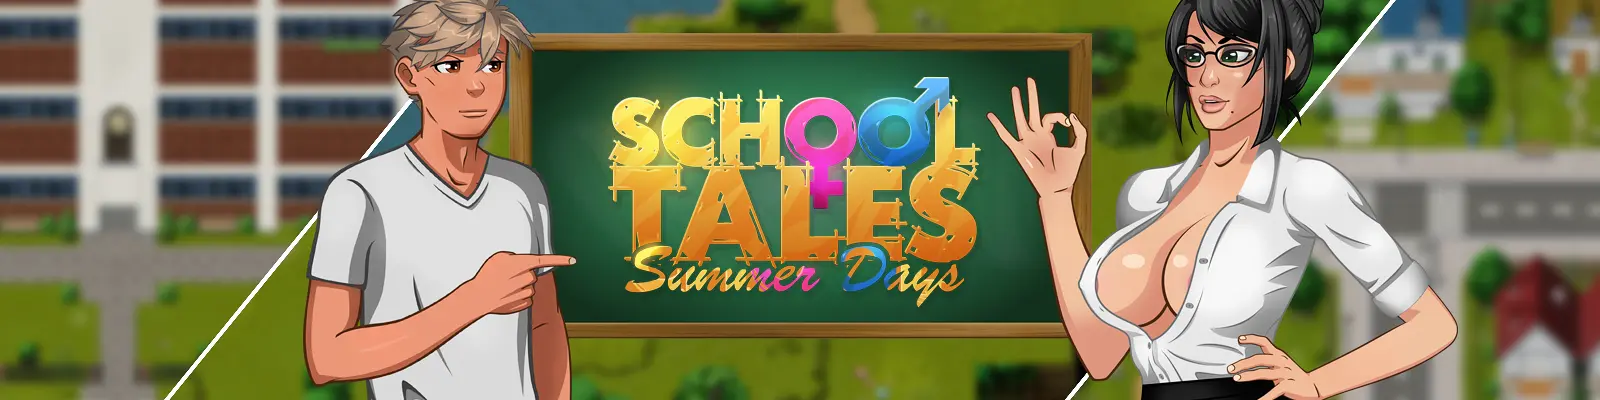 School Tales: Summer Days [v0.1 Beta] main image